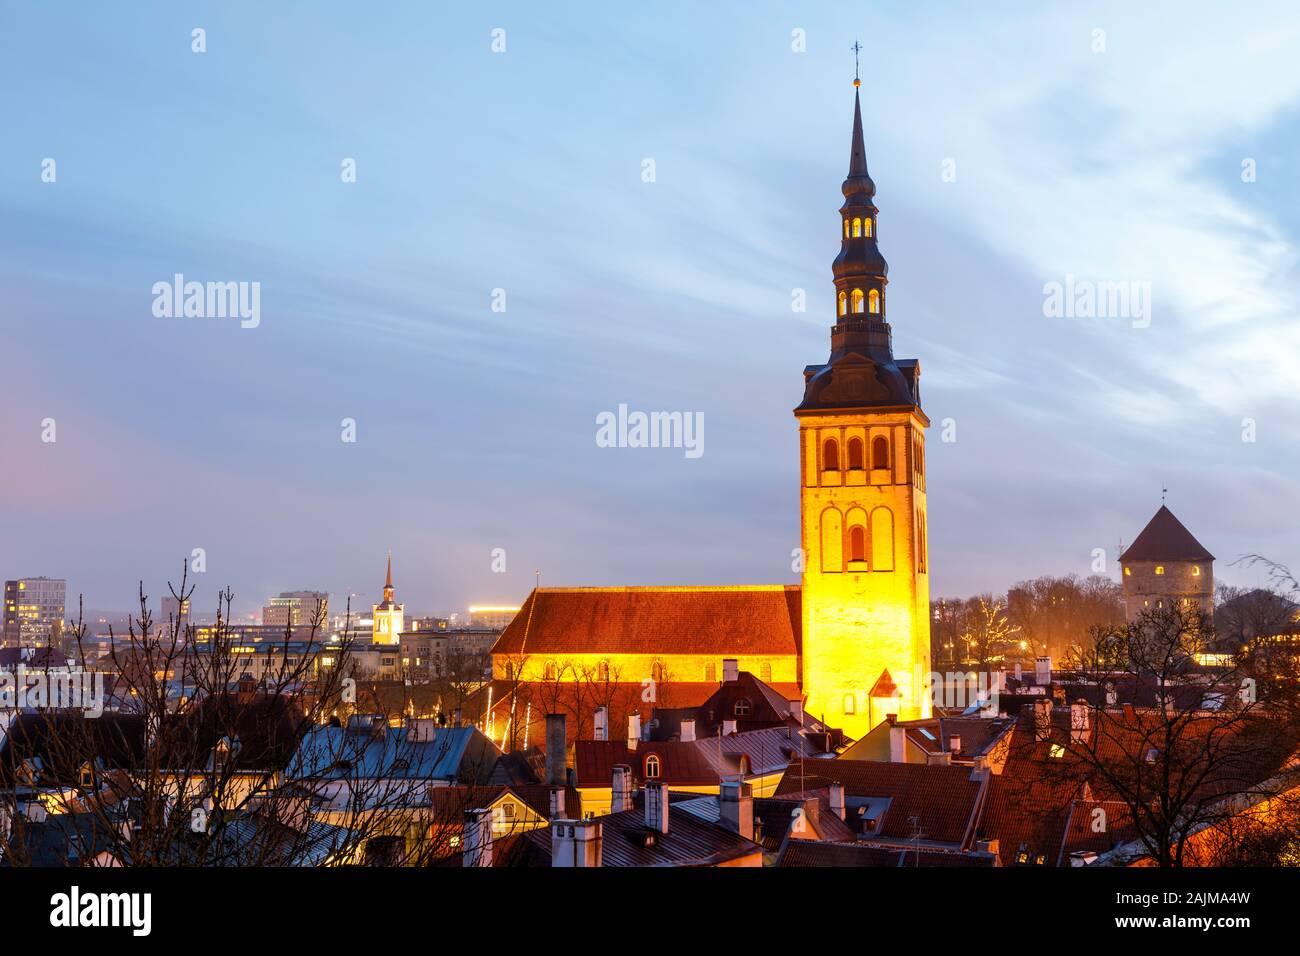 Illuminated tower of church st. Nicholas in Tallinn, Estonia Stock Photo